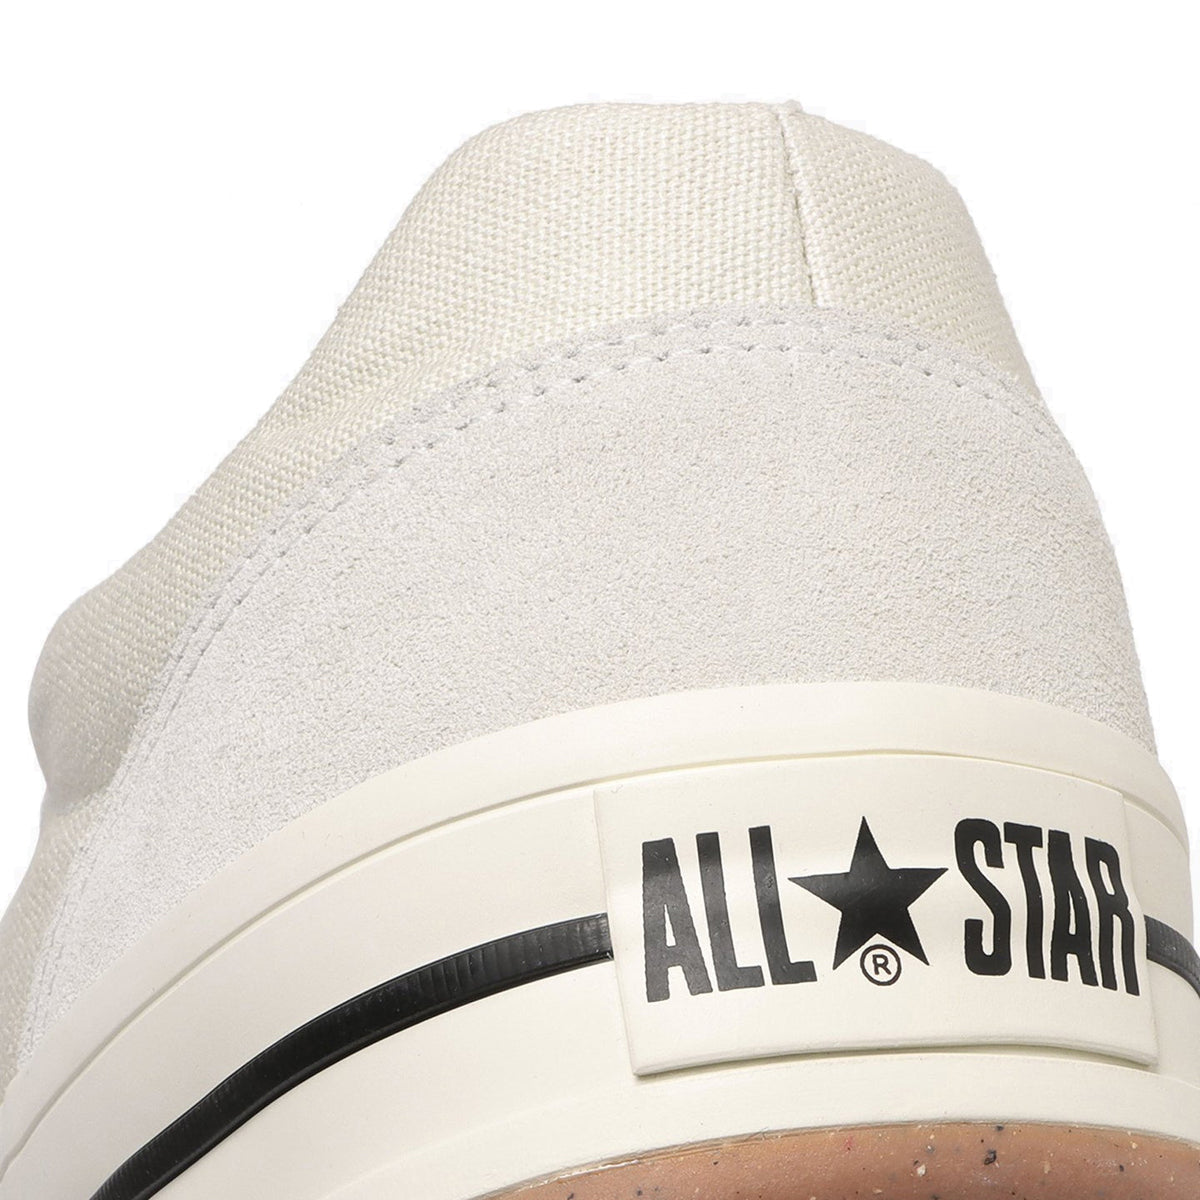 ALL STAR (R) BOARDERSTAR OX 【予約】2月27日発売予定【返品交換キャンセル不可】